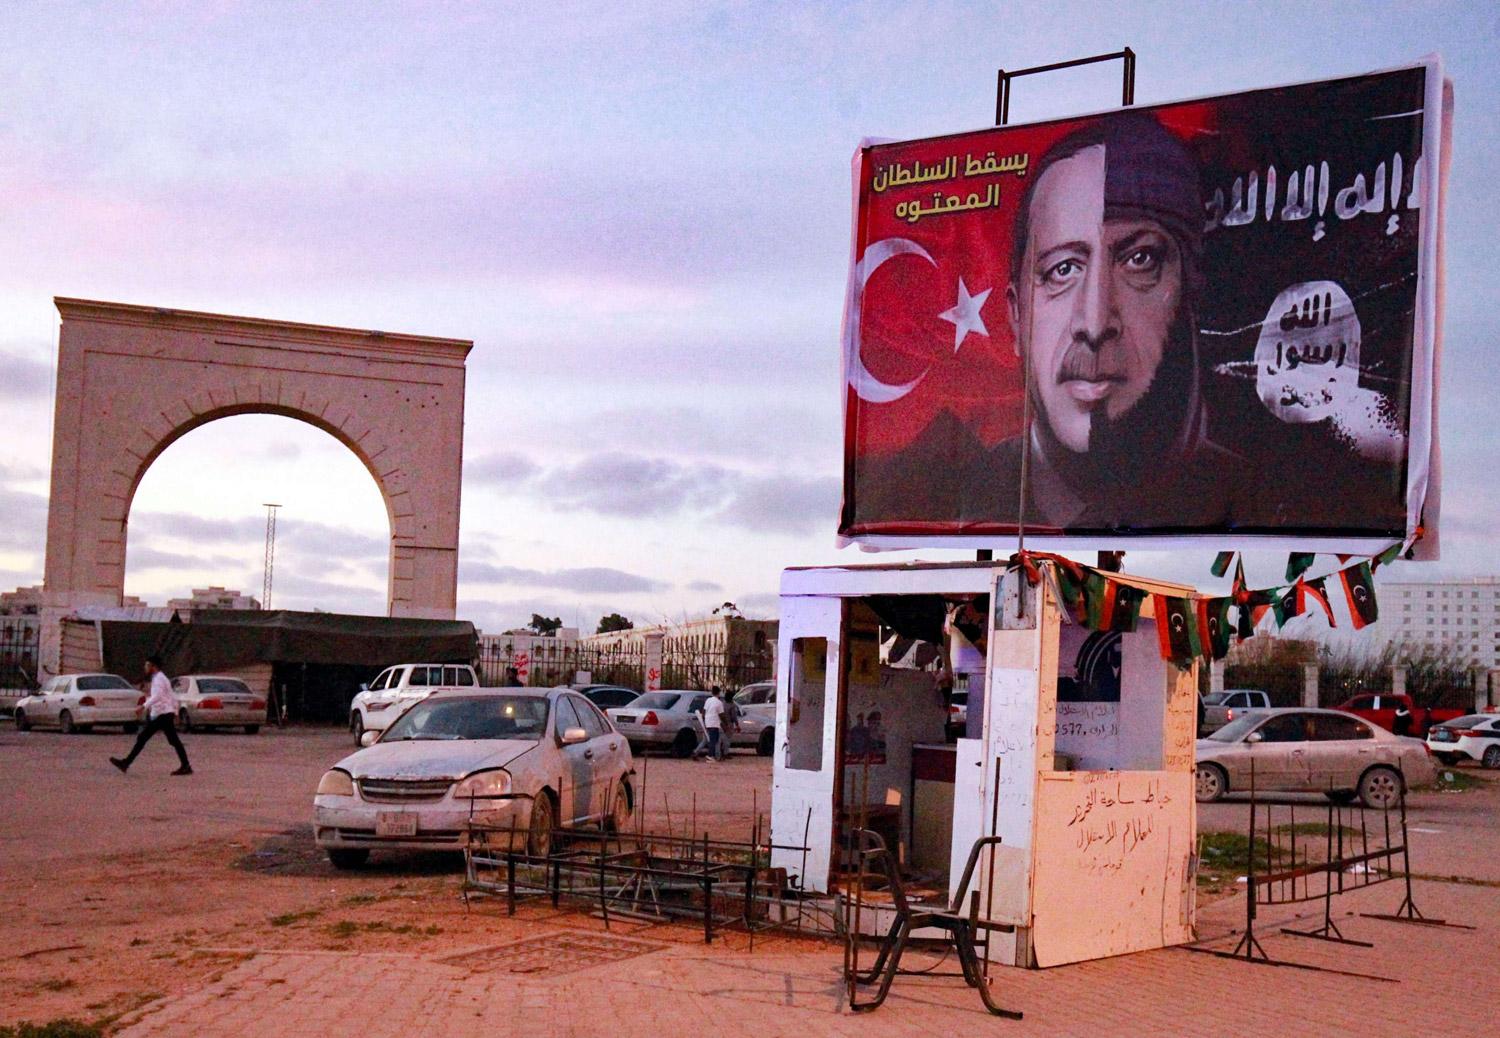 اردوغان حول ليبيا الى ساحة مفتوحة للمرتزقة ولتجارب الاسلحة وللارهاب